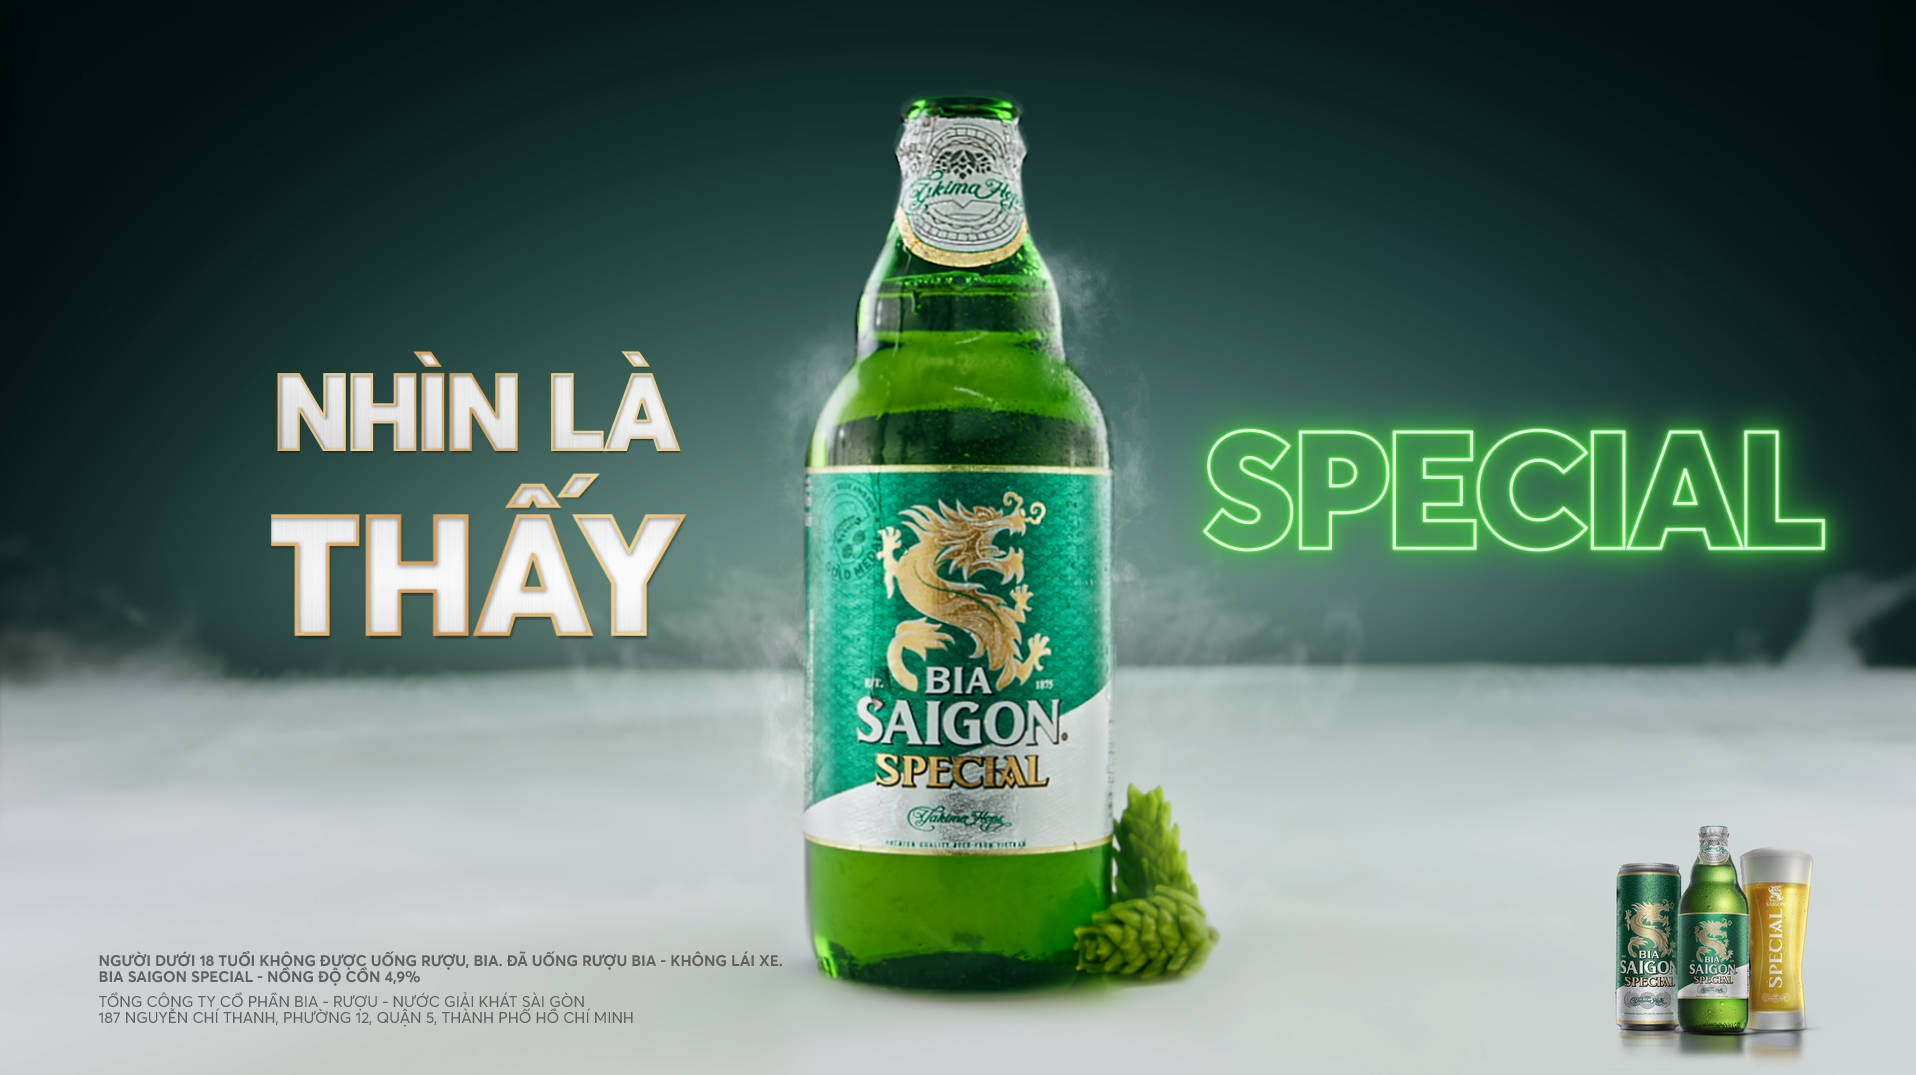 Bia Saigon Special - Nhìn là thấy Special